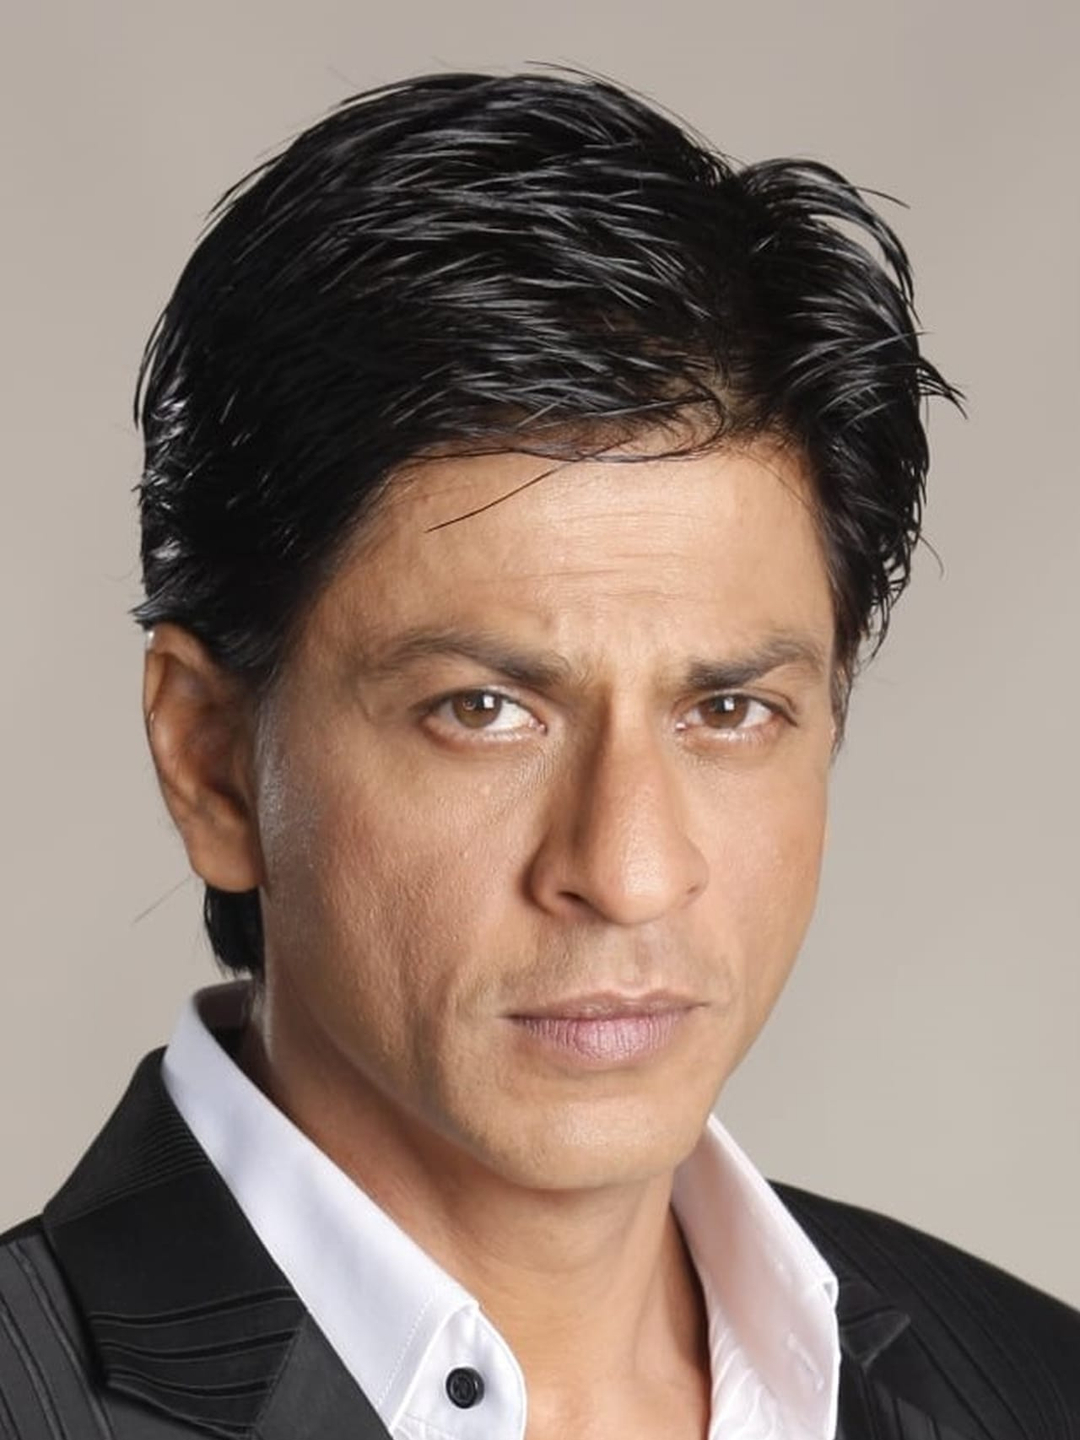 Shah Rukh Khan his zodiac sign